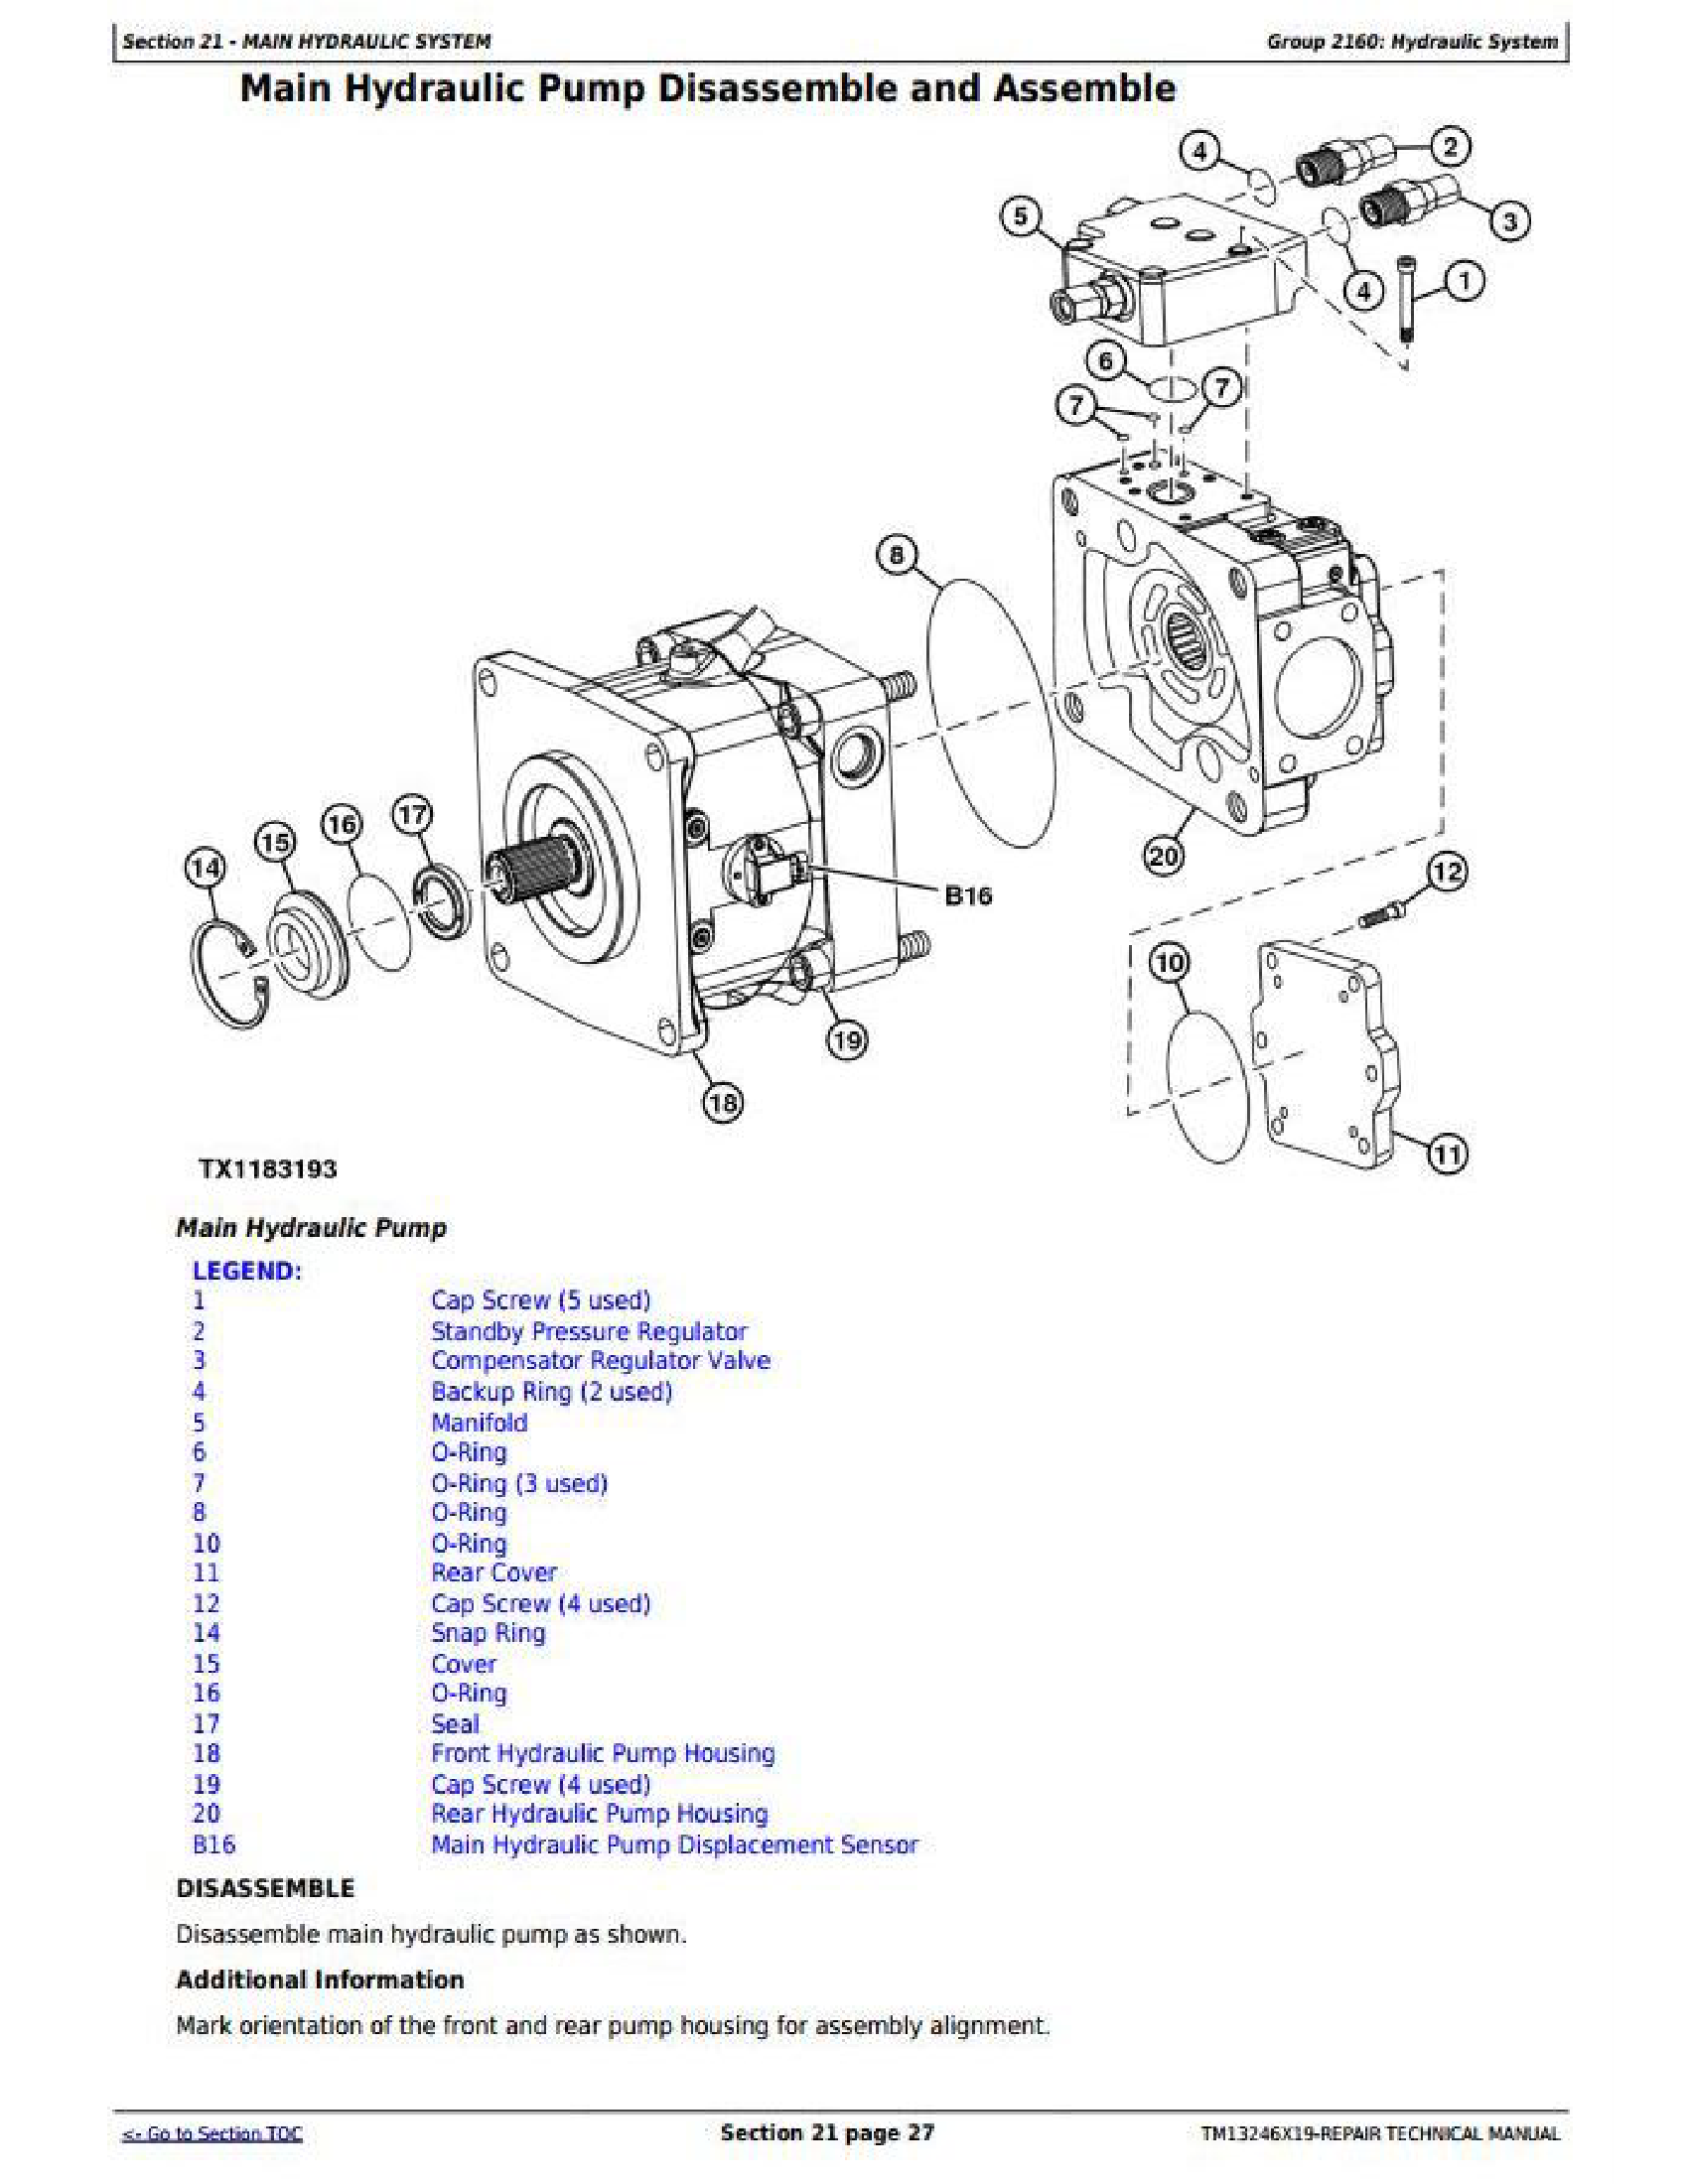 John Deere 5093E manual pdf